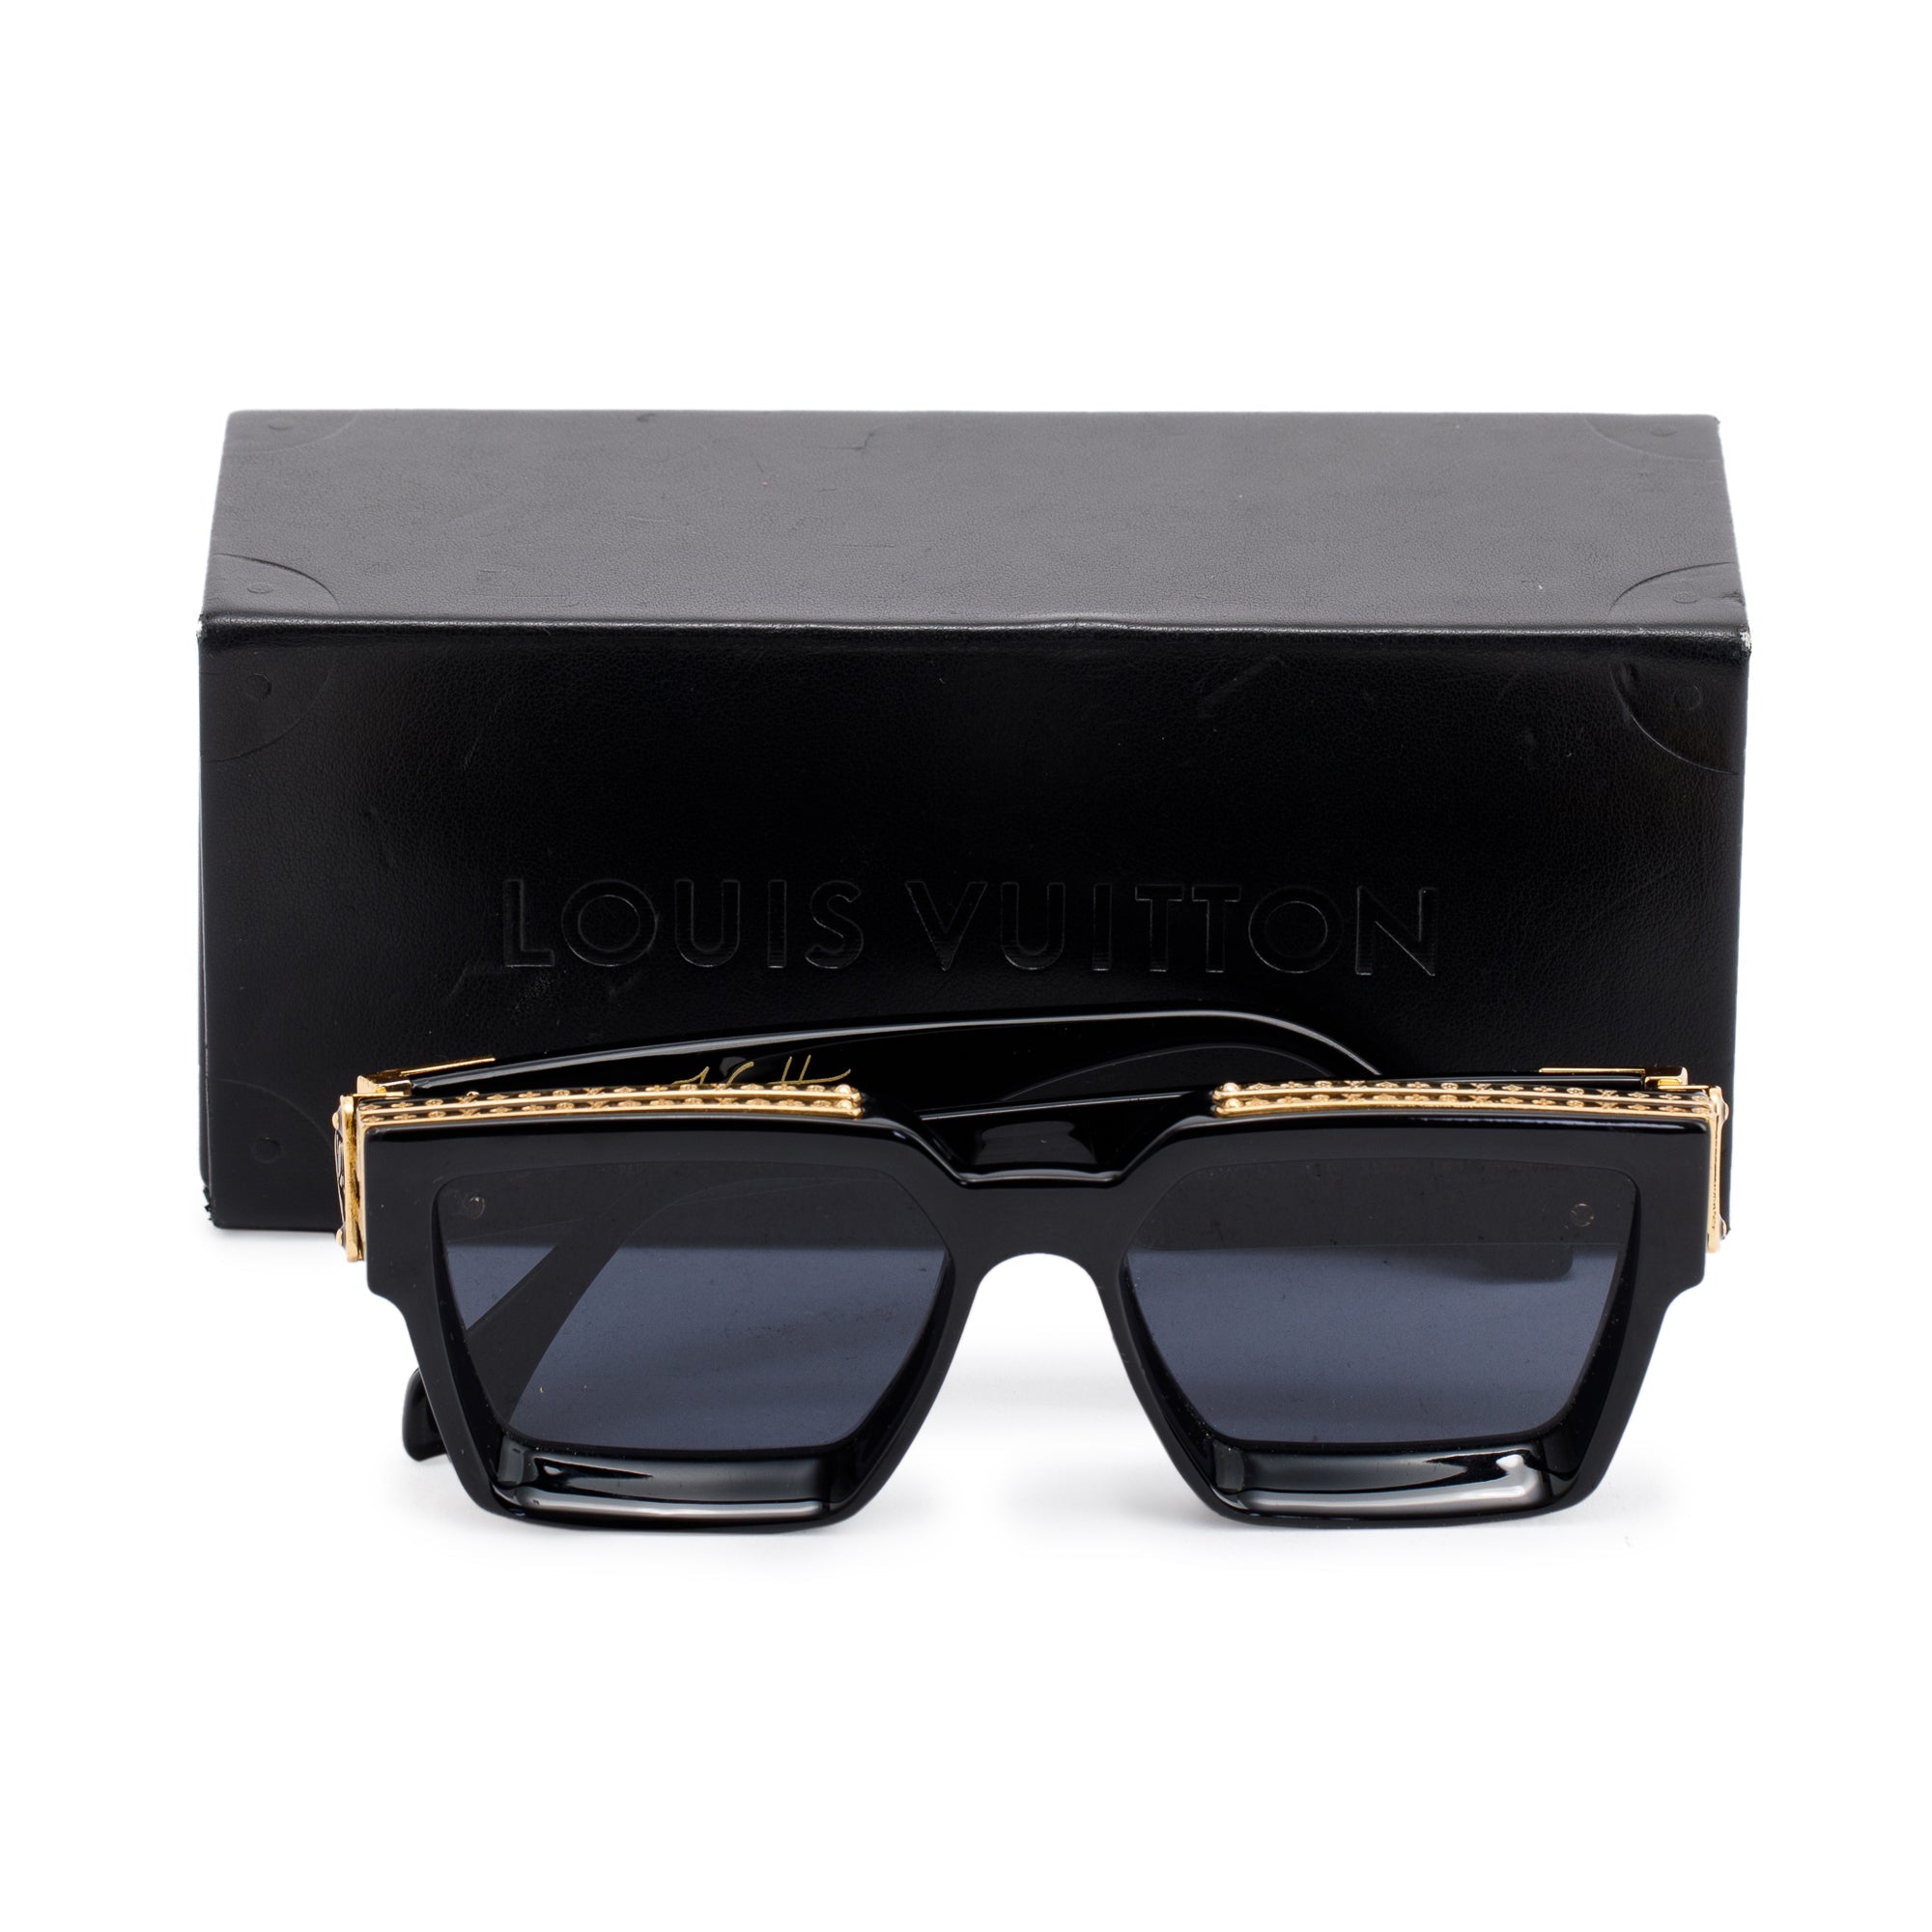 Louis Vuitton 2020 1.1 Millionaires Sunglasses w/ Box